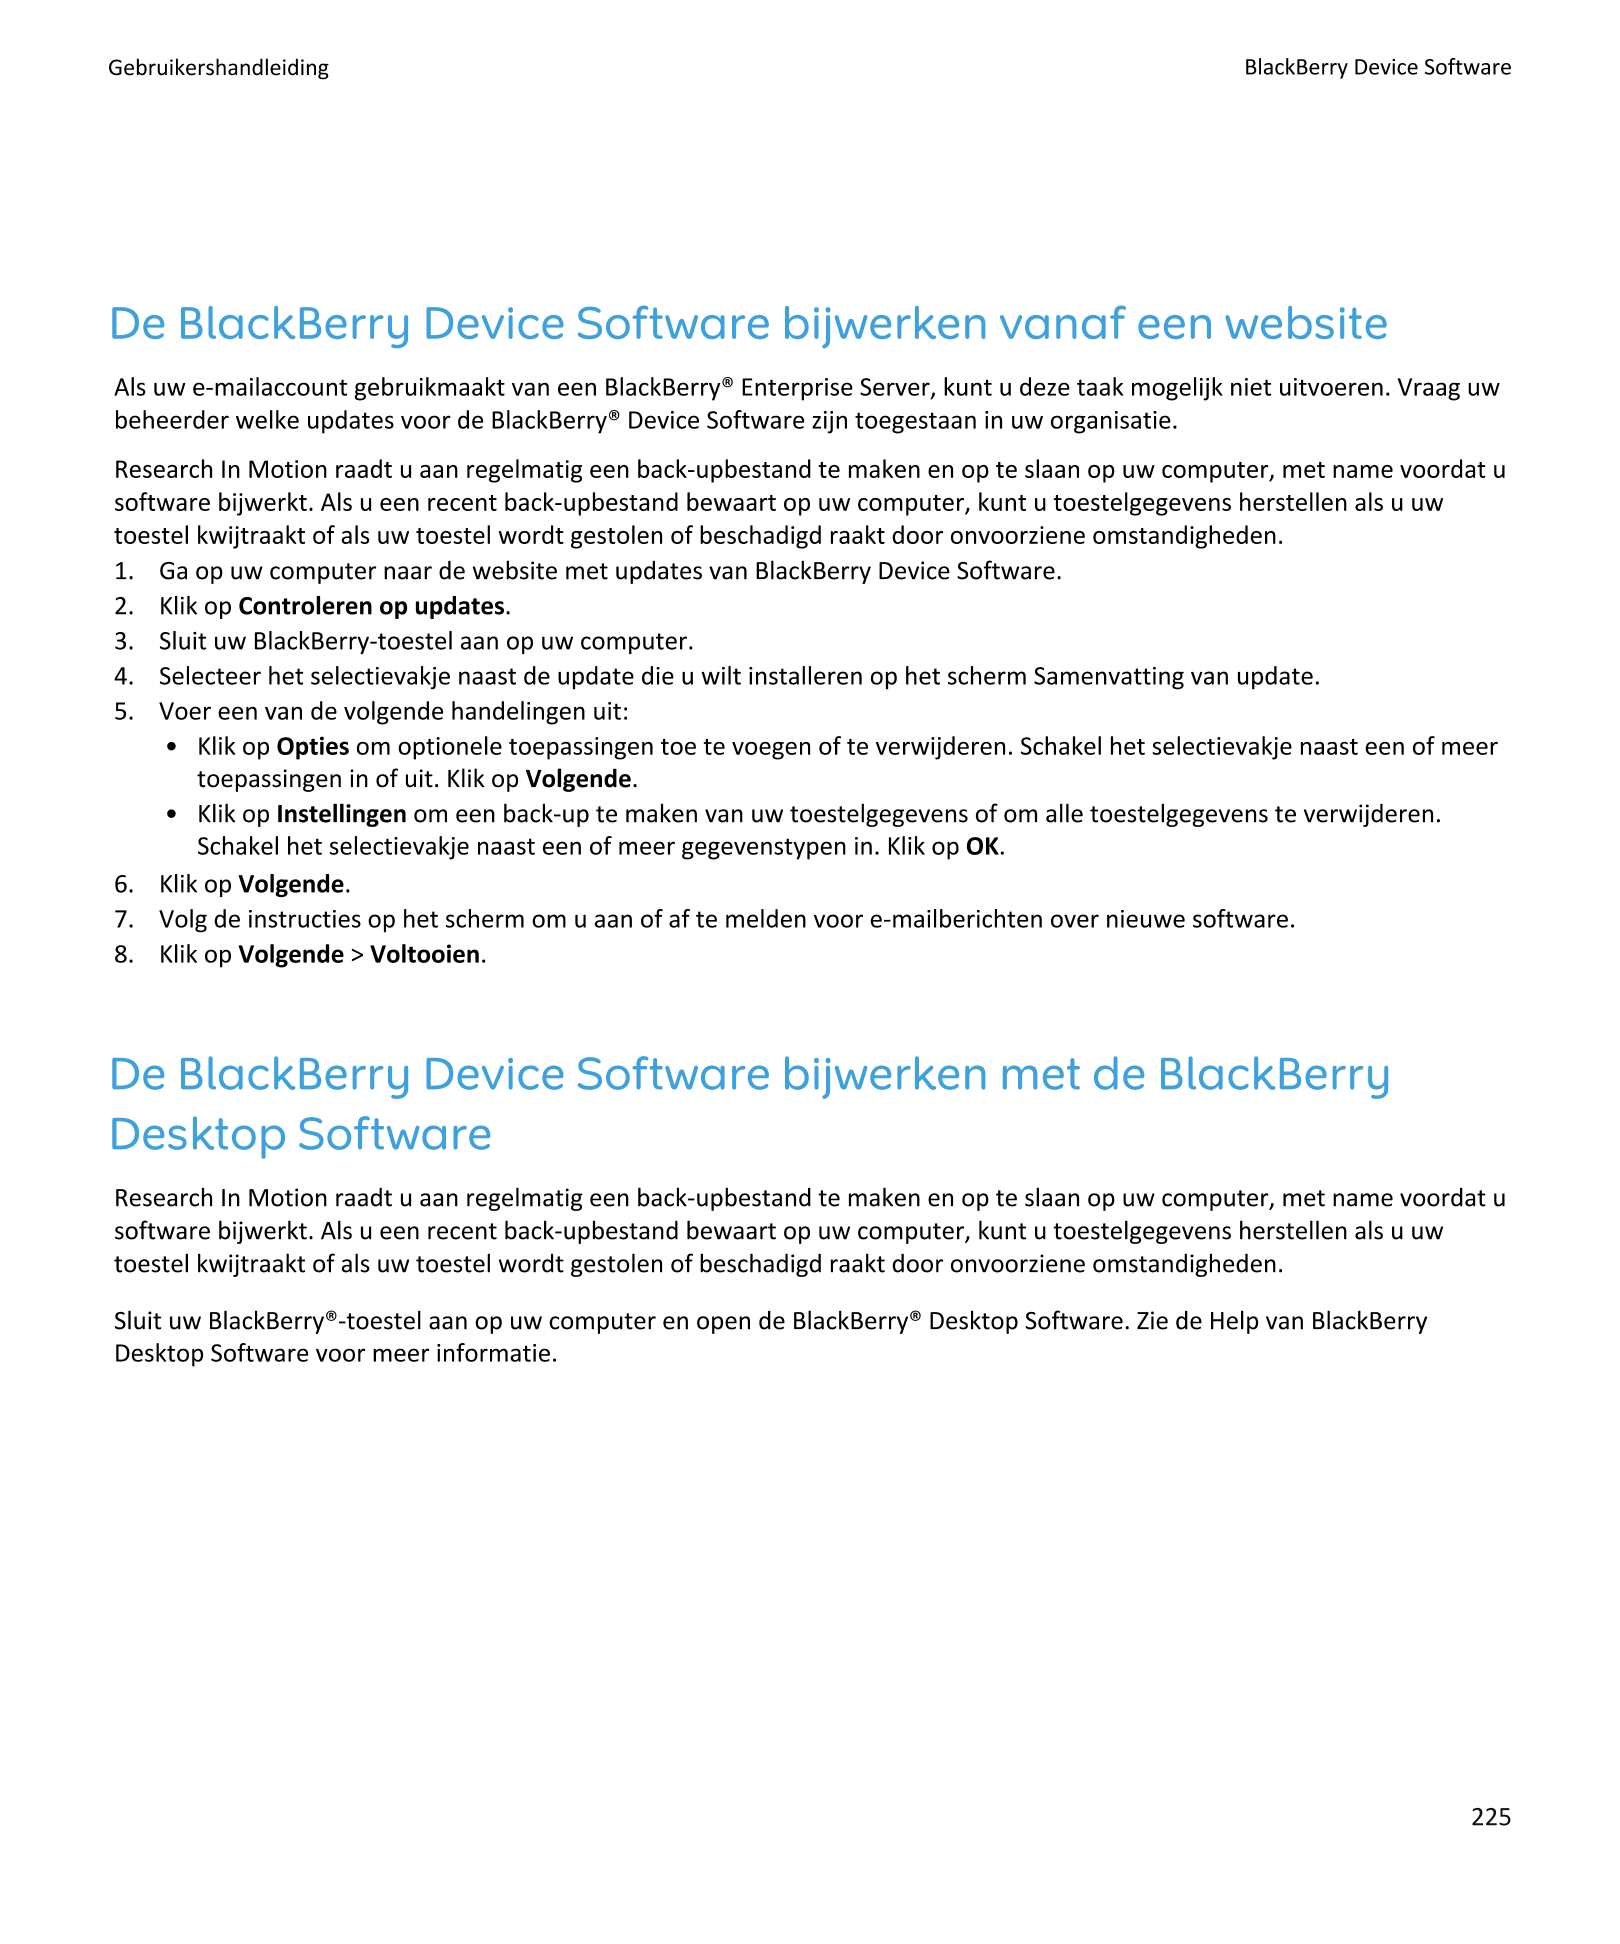 Gebruikershandleiding BlackBerry Device Software
De BlackBerry Device Software bijwerken vanaf een website
Als uw e-mailaccount 